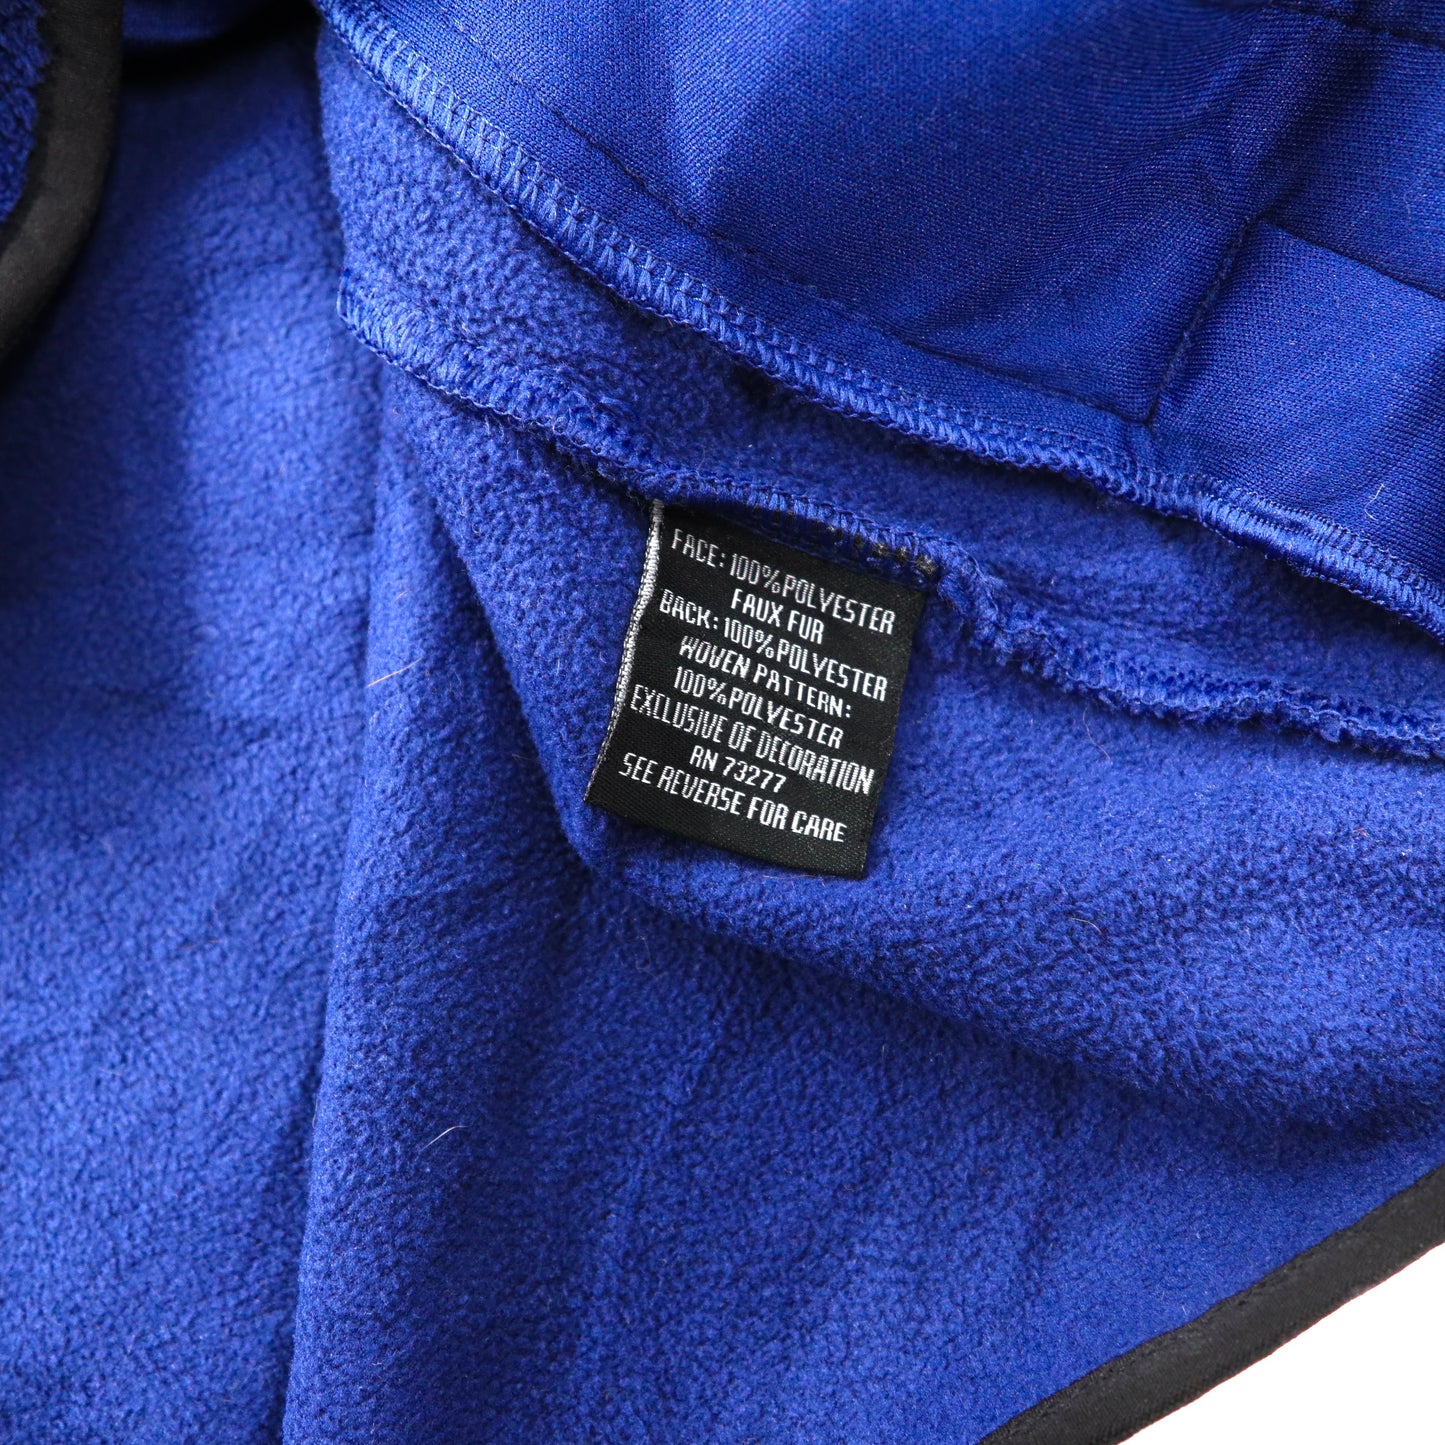 FILA SPORT ナイロン切り替えフリースジャケット XL ブルー ポリエステル ロゴ刺繍 00年代